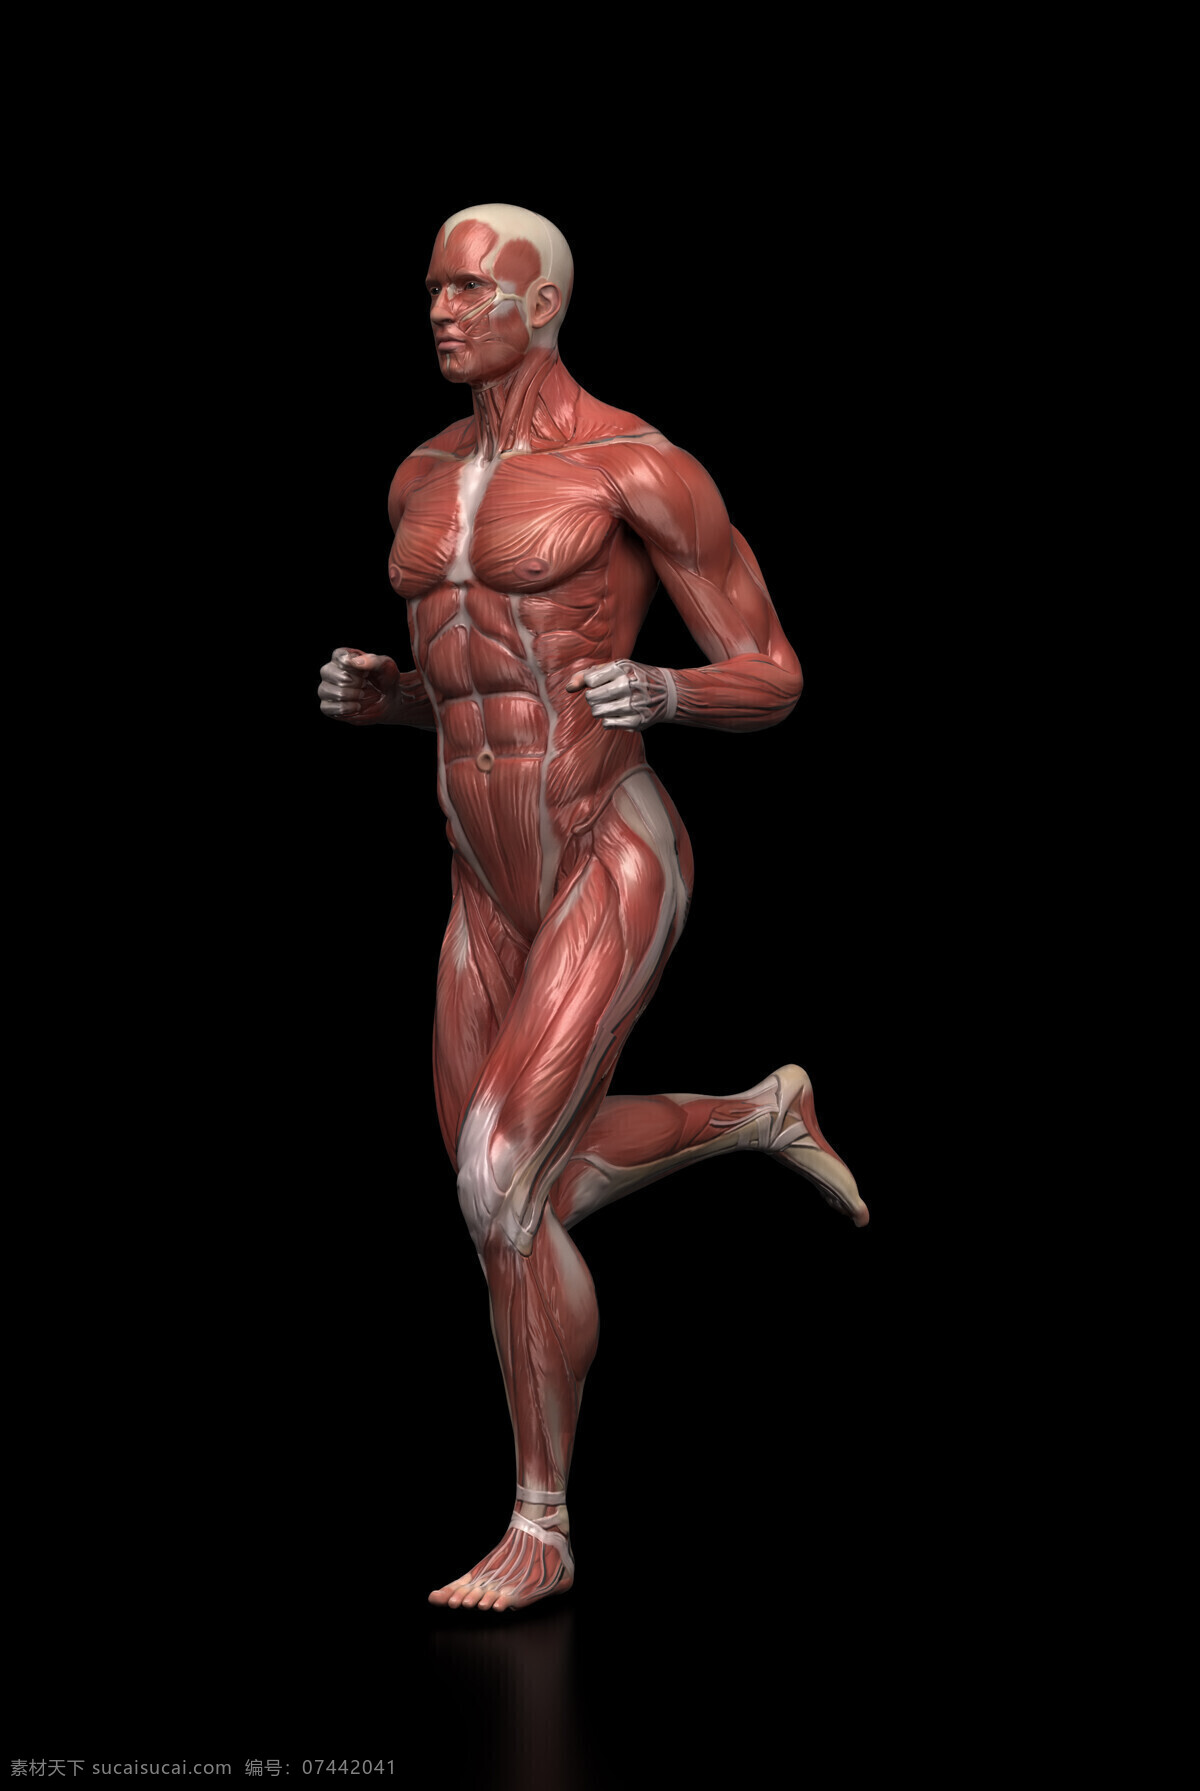 人体 肌肉 组织结构 动作 跑步 人体肌肉 人体解剖学 男性人体 肌肉组织 图医学 人物图库 其他人物